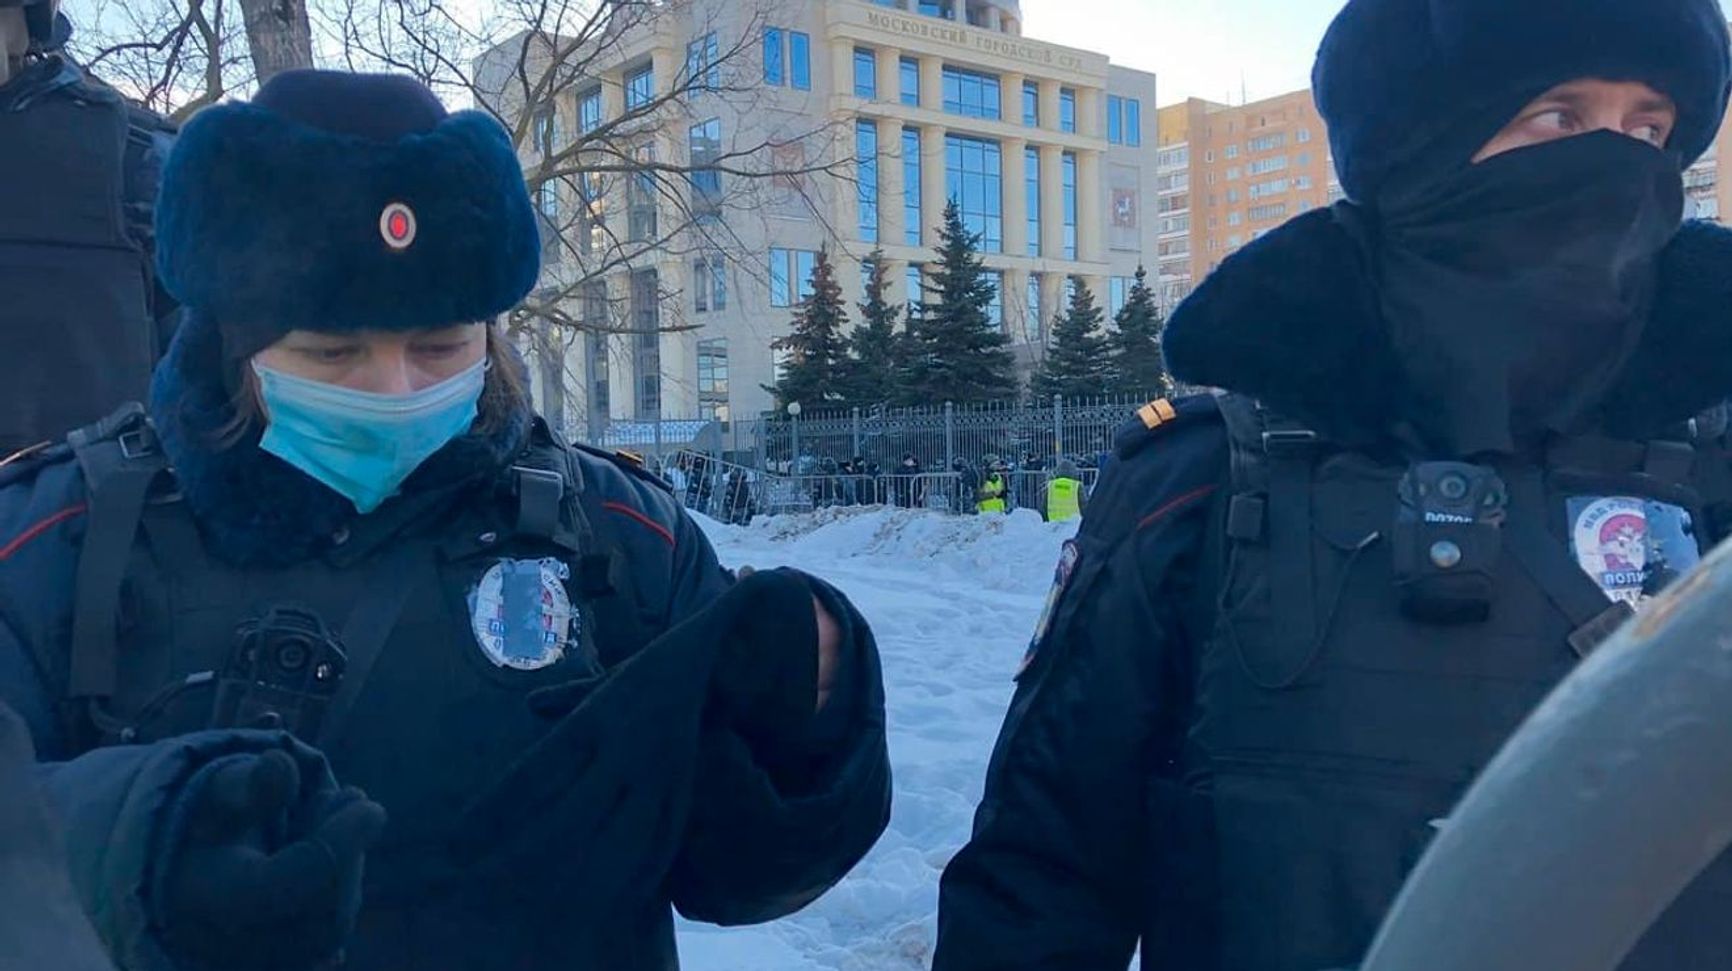 Кореспондент «60 хвилин» заявив, що обстановка у Мосміськсуду спокійна. В цей час присутніх там затримували сотнями